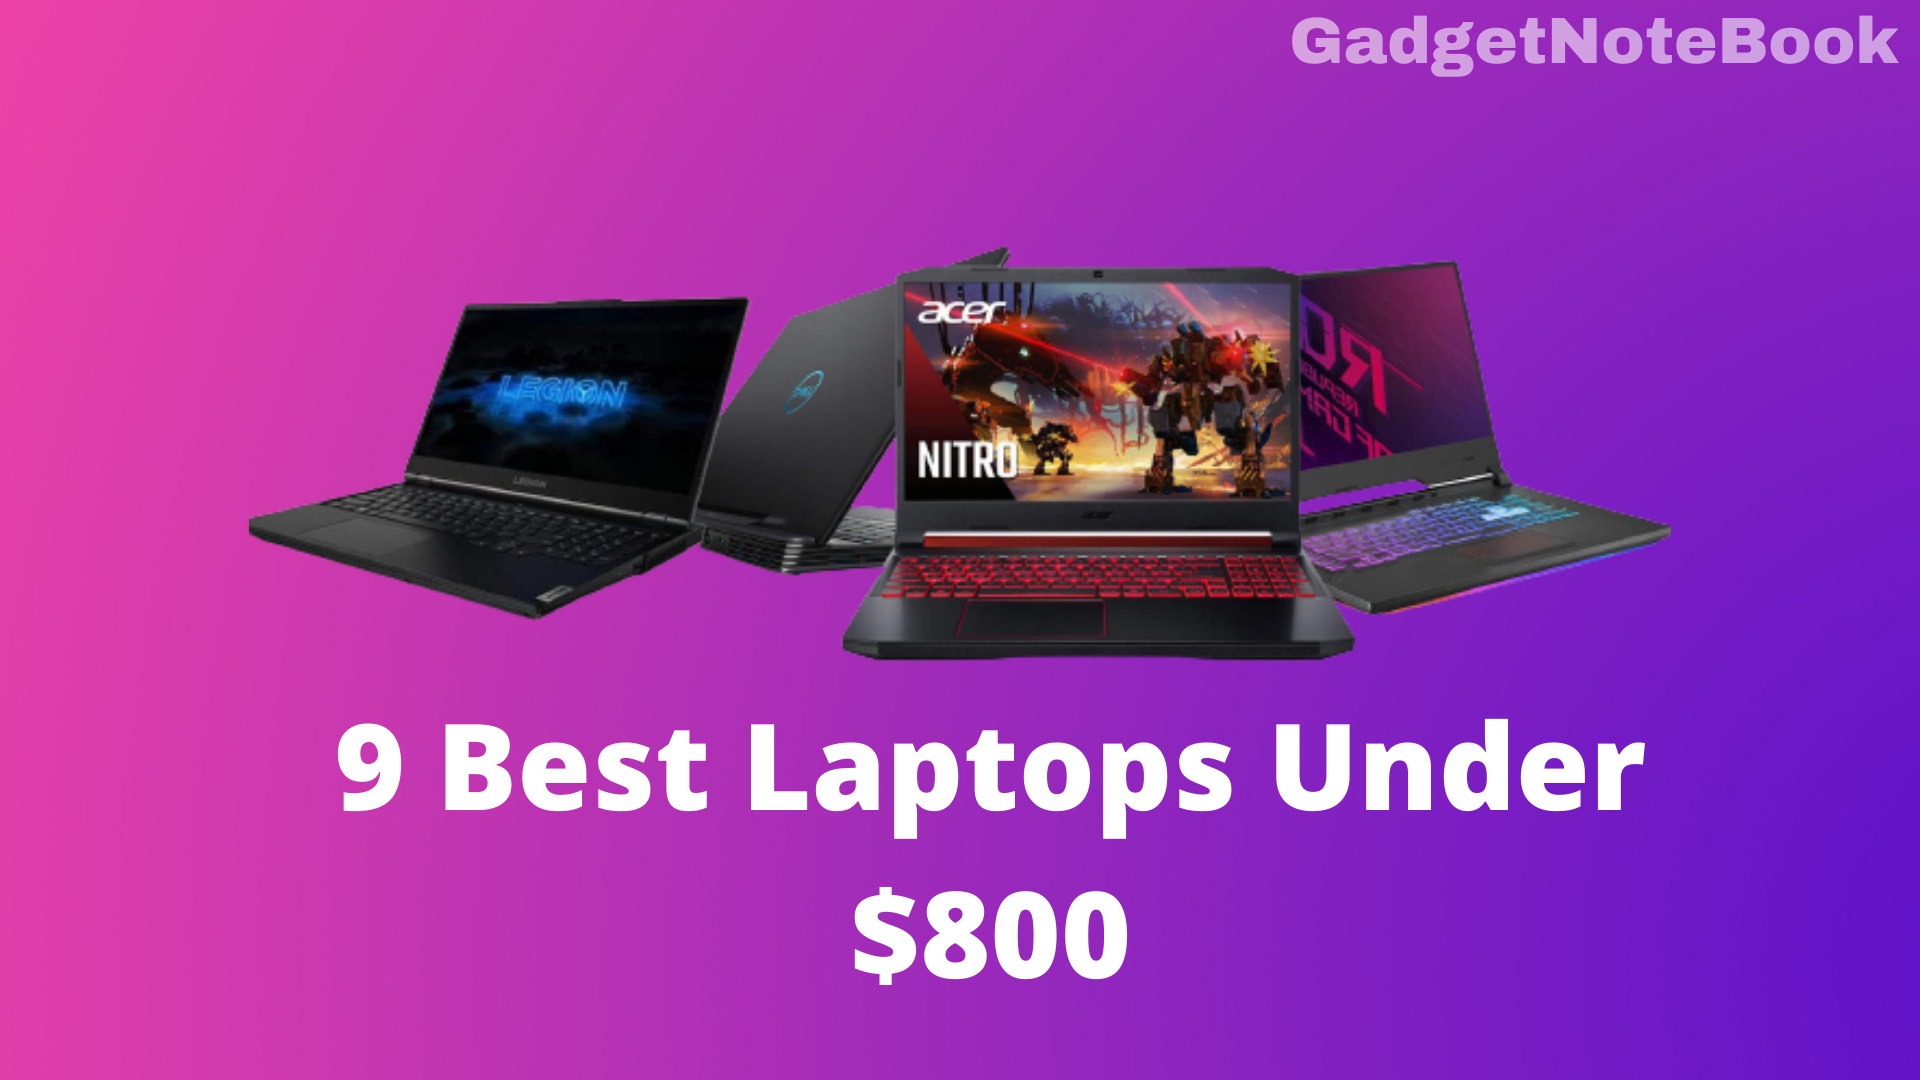 9 Best Laptops Under $800